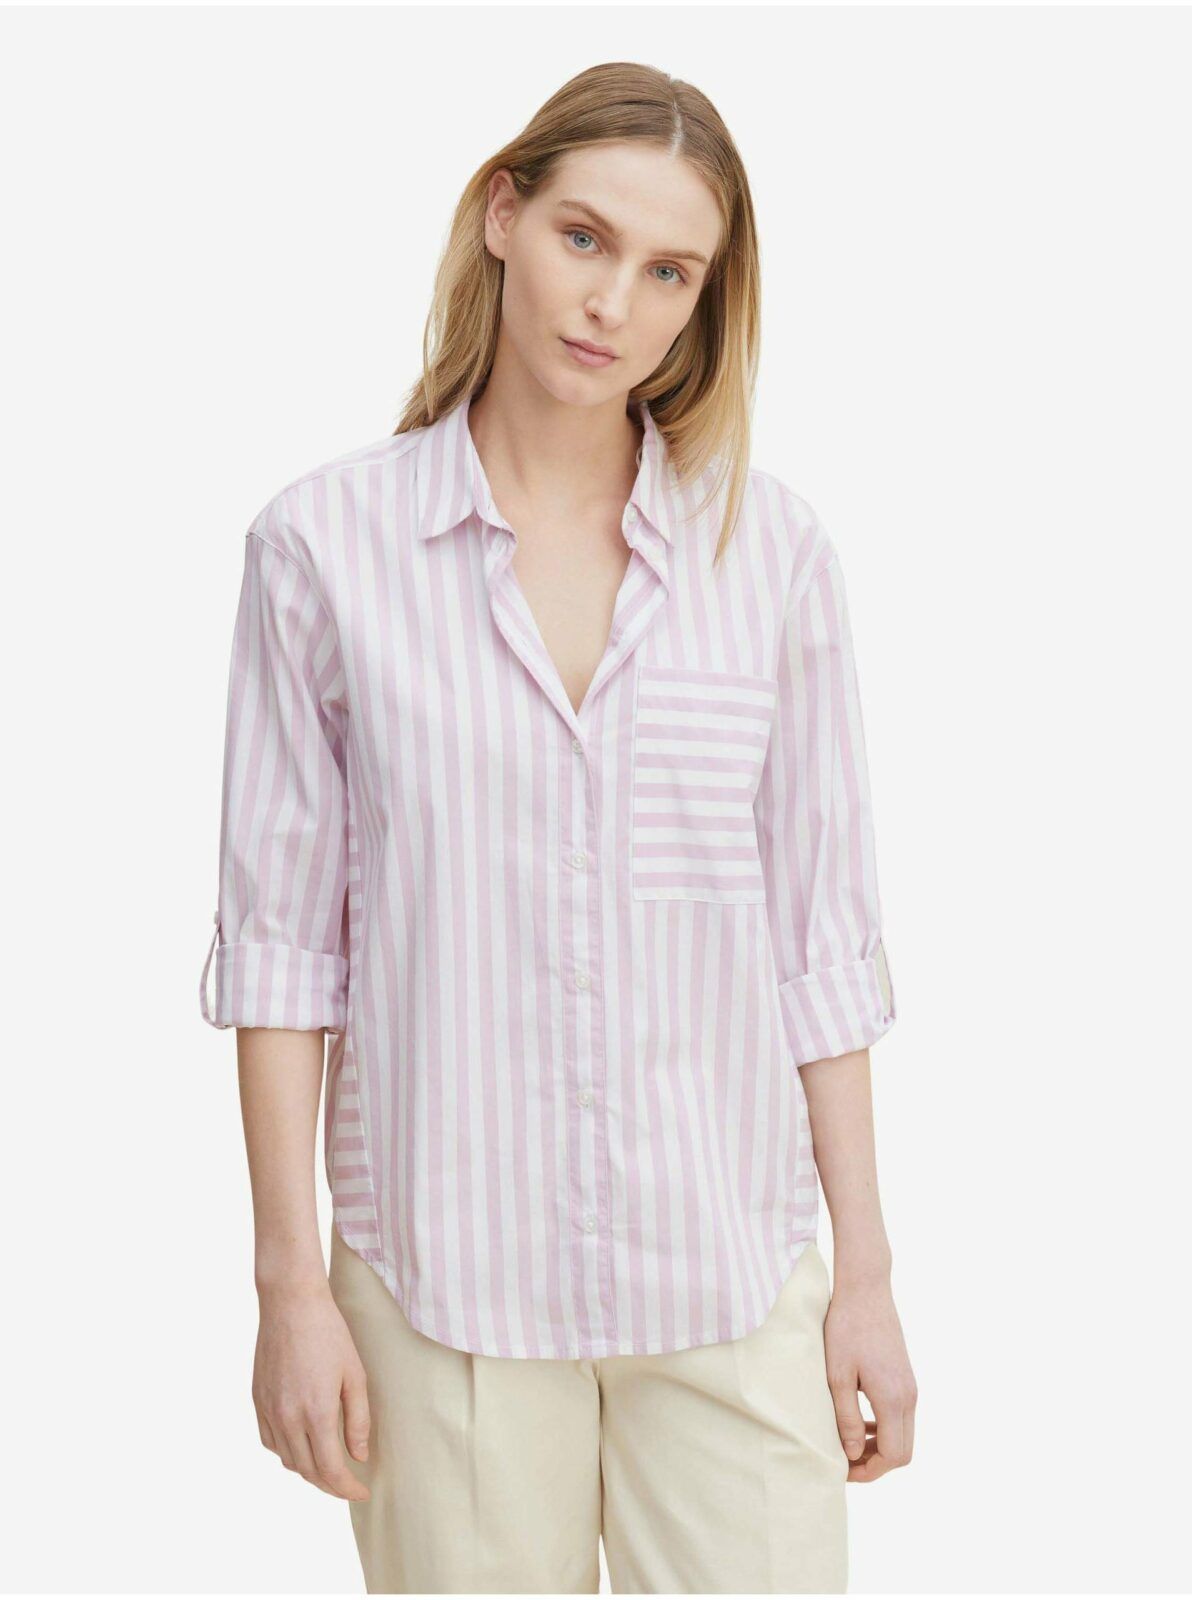 Bílo-světle fialová dámská pruhovaná košile Tom